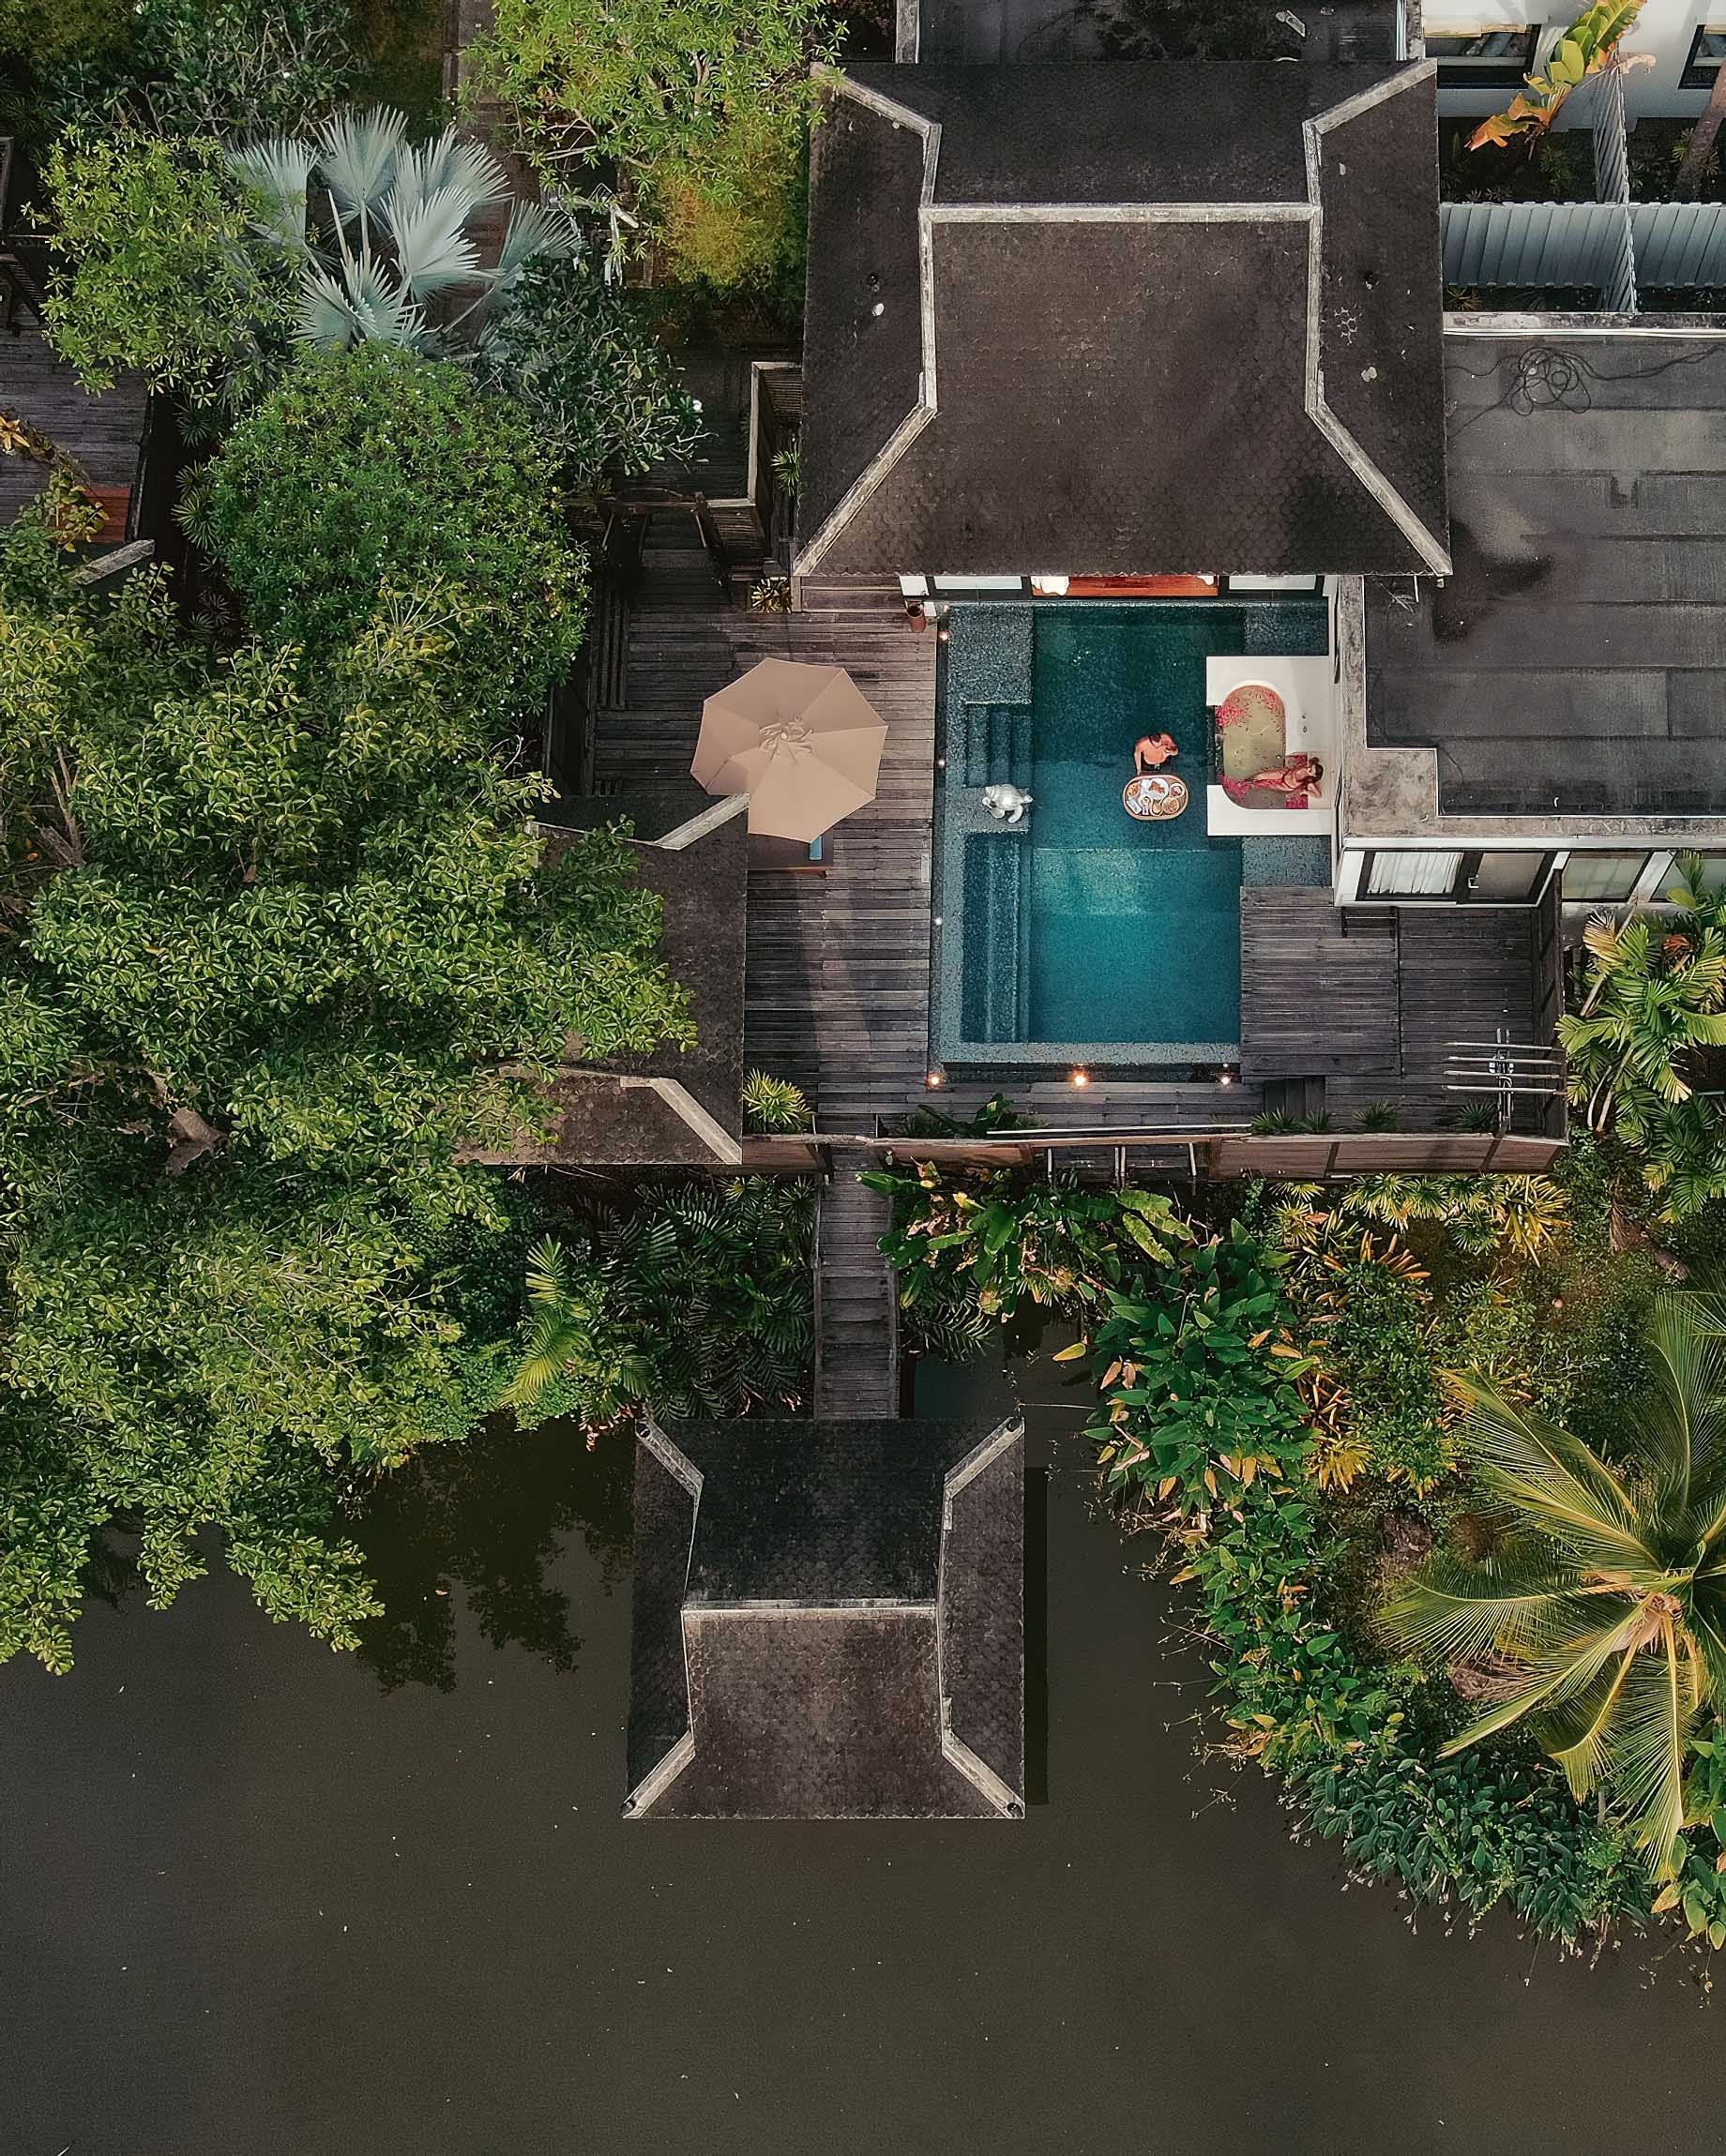 Anantara Mai Khao Phuket Villas Resort – Thailand – Villa Aerial View